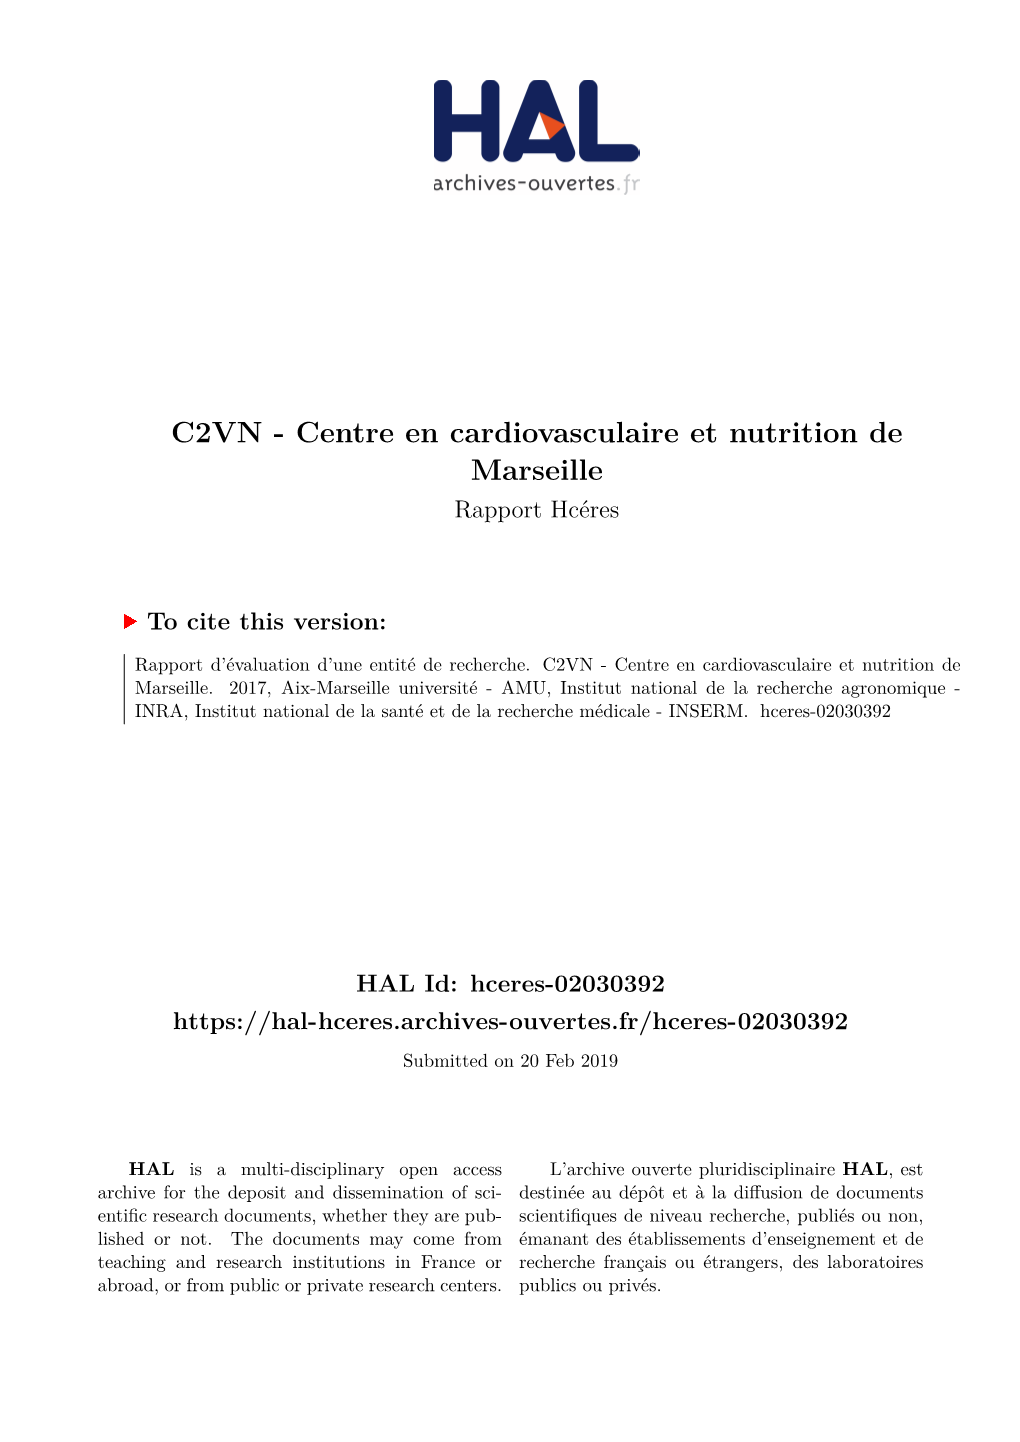 C2VN - Centre En Cardiovasculaire Et Nutrition De Marseille Rapport Hcéres